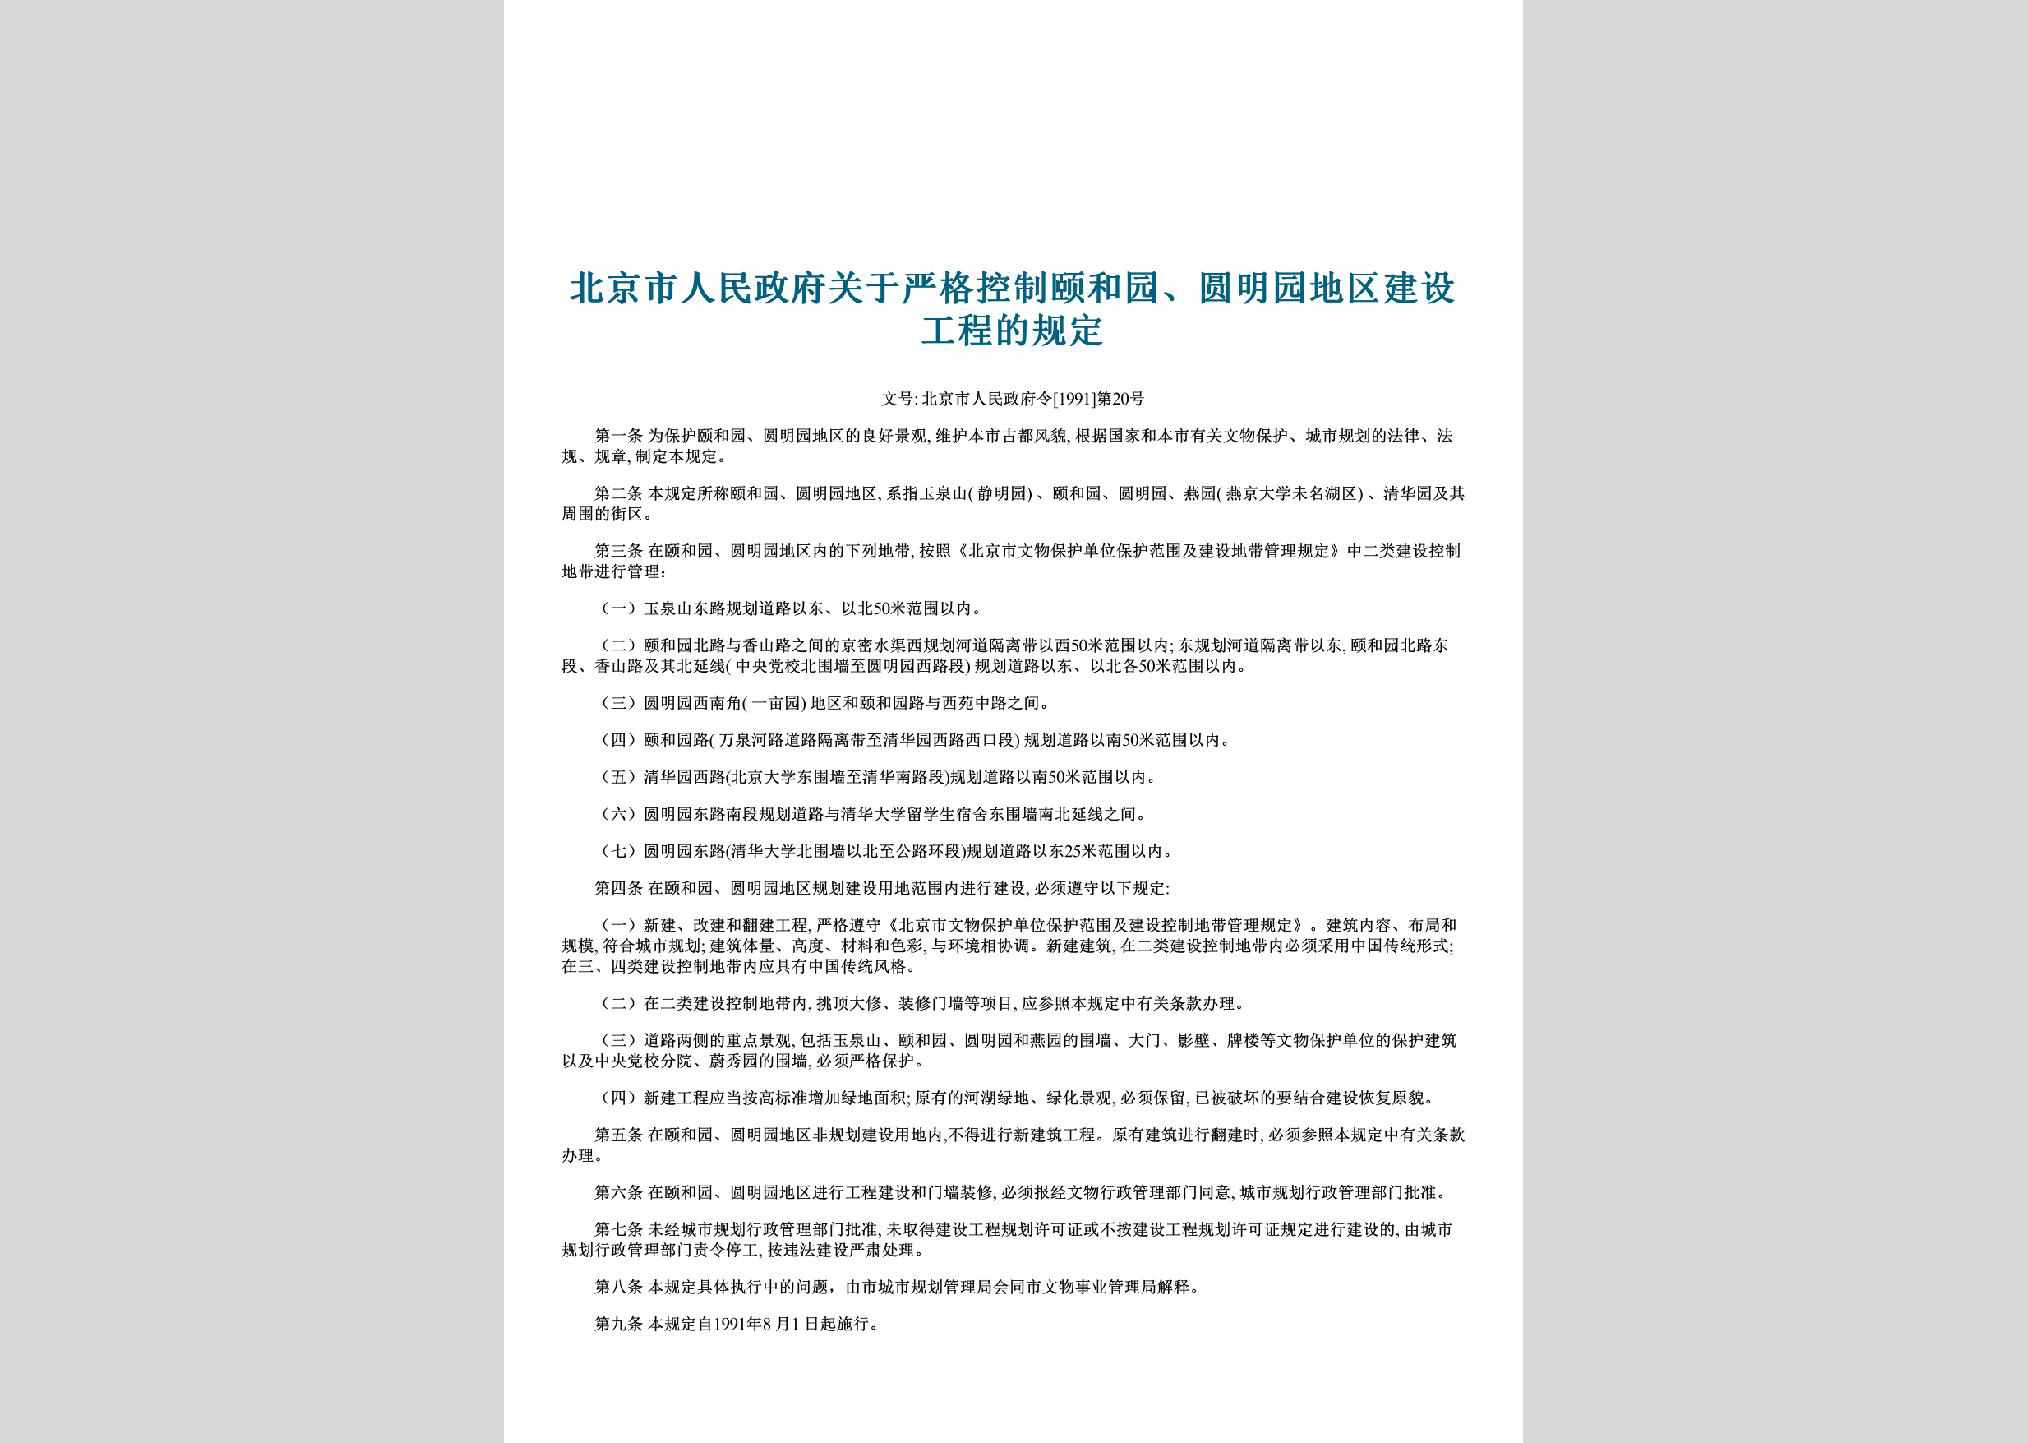 北京市人民政府令[1991]第20号：关于严格控制颐和园、圆明园地区建设工程的规定